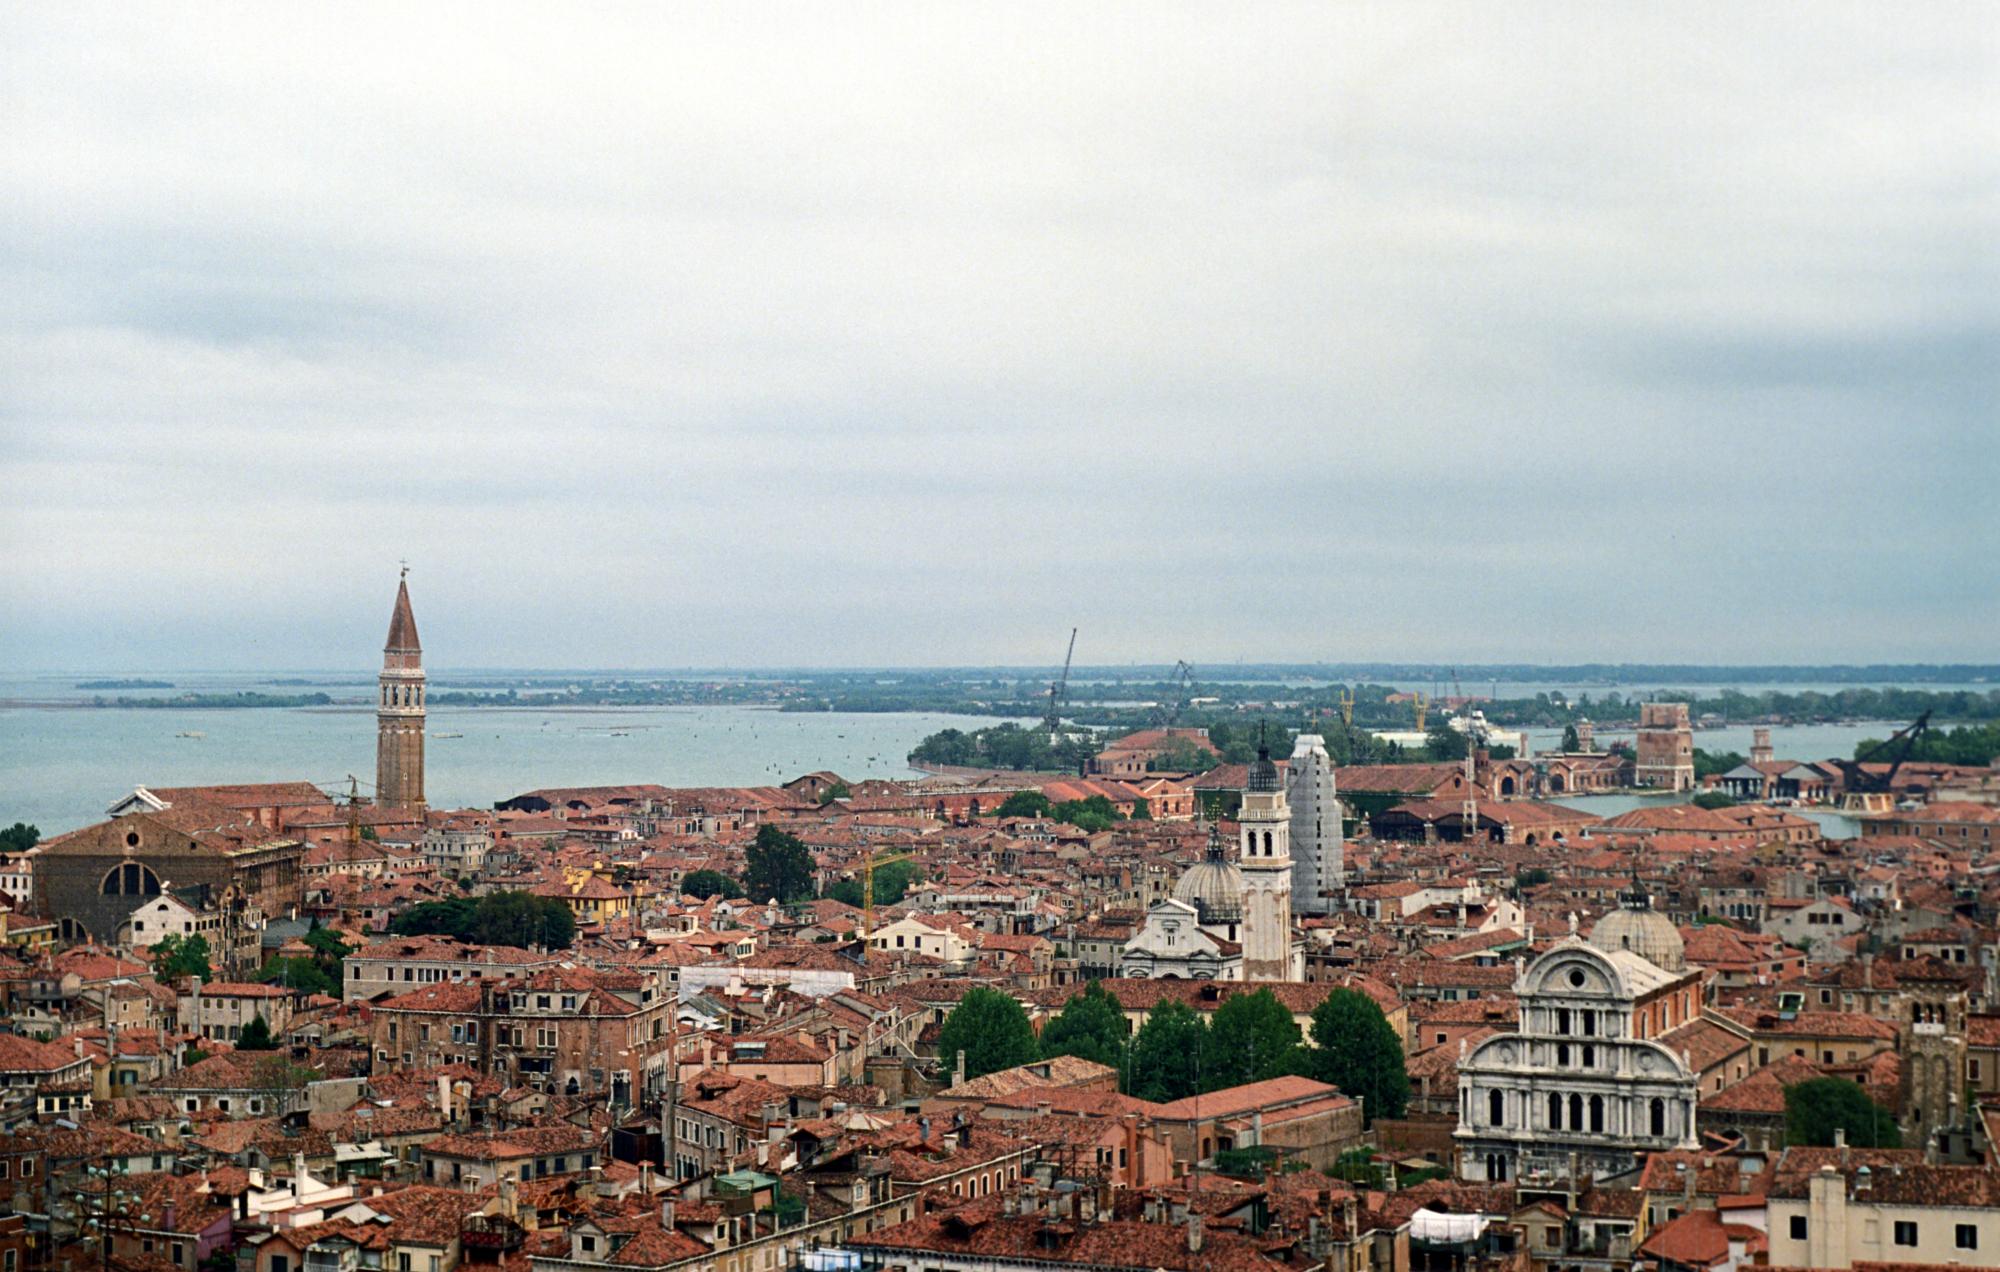 Italy (Ana) - Venice #16